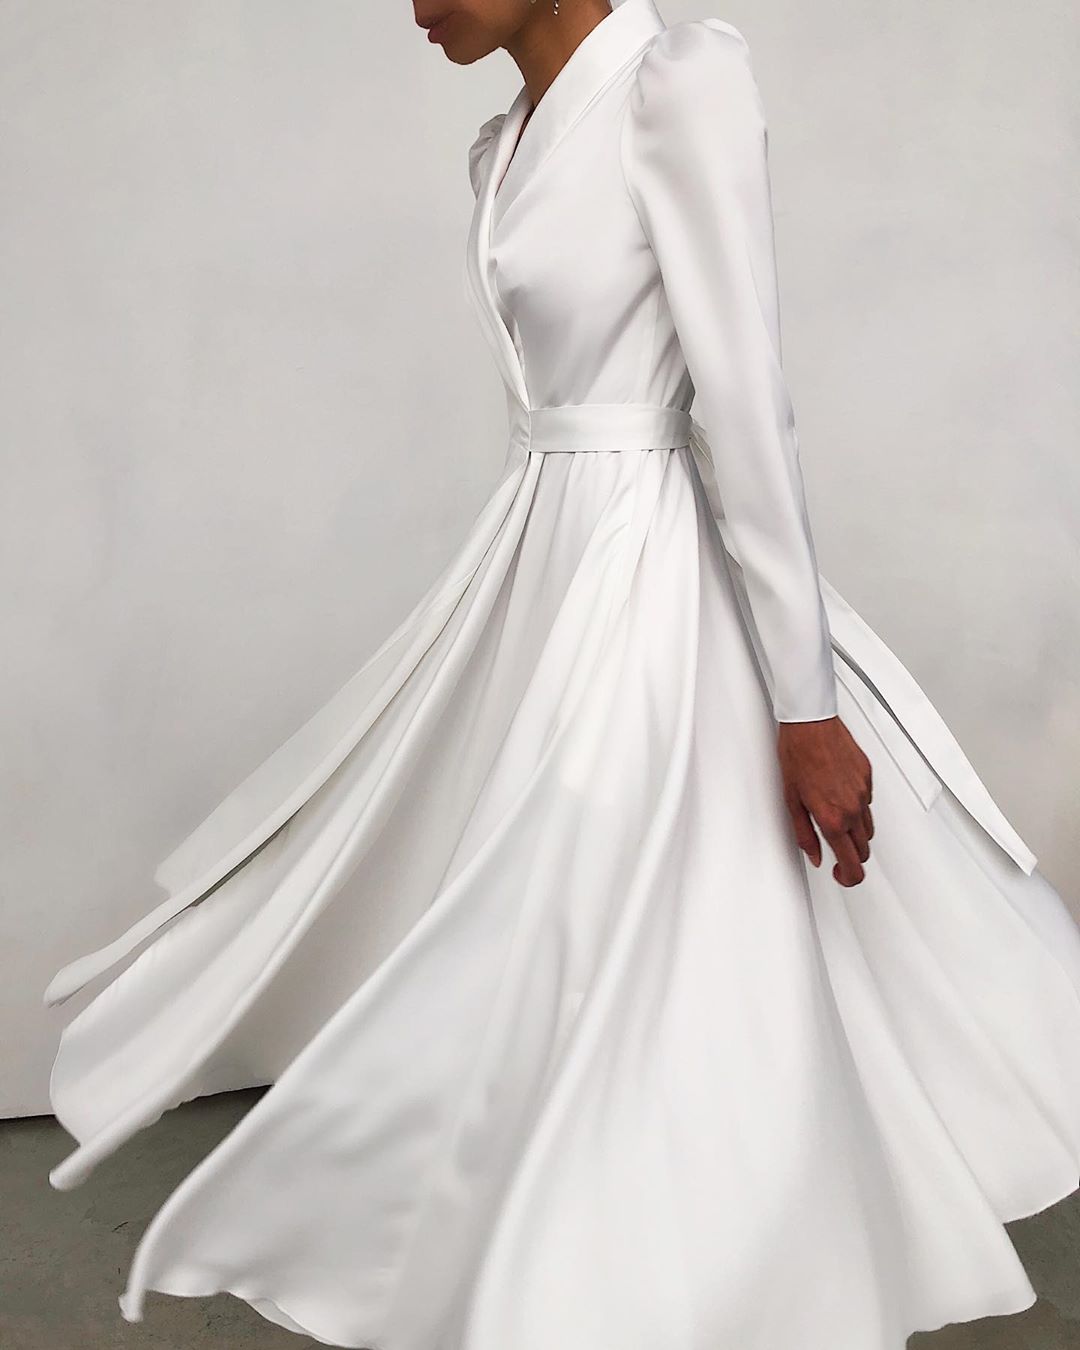 LN-family.com - Back in stock
Одна из самых популярных моделей платьев LN Family - платье на запахе из струящейся ткани белого цвета снова доступно к покупке.
Больше фото на официальном сайте www.LN-f...